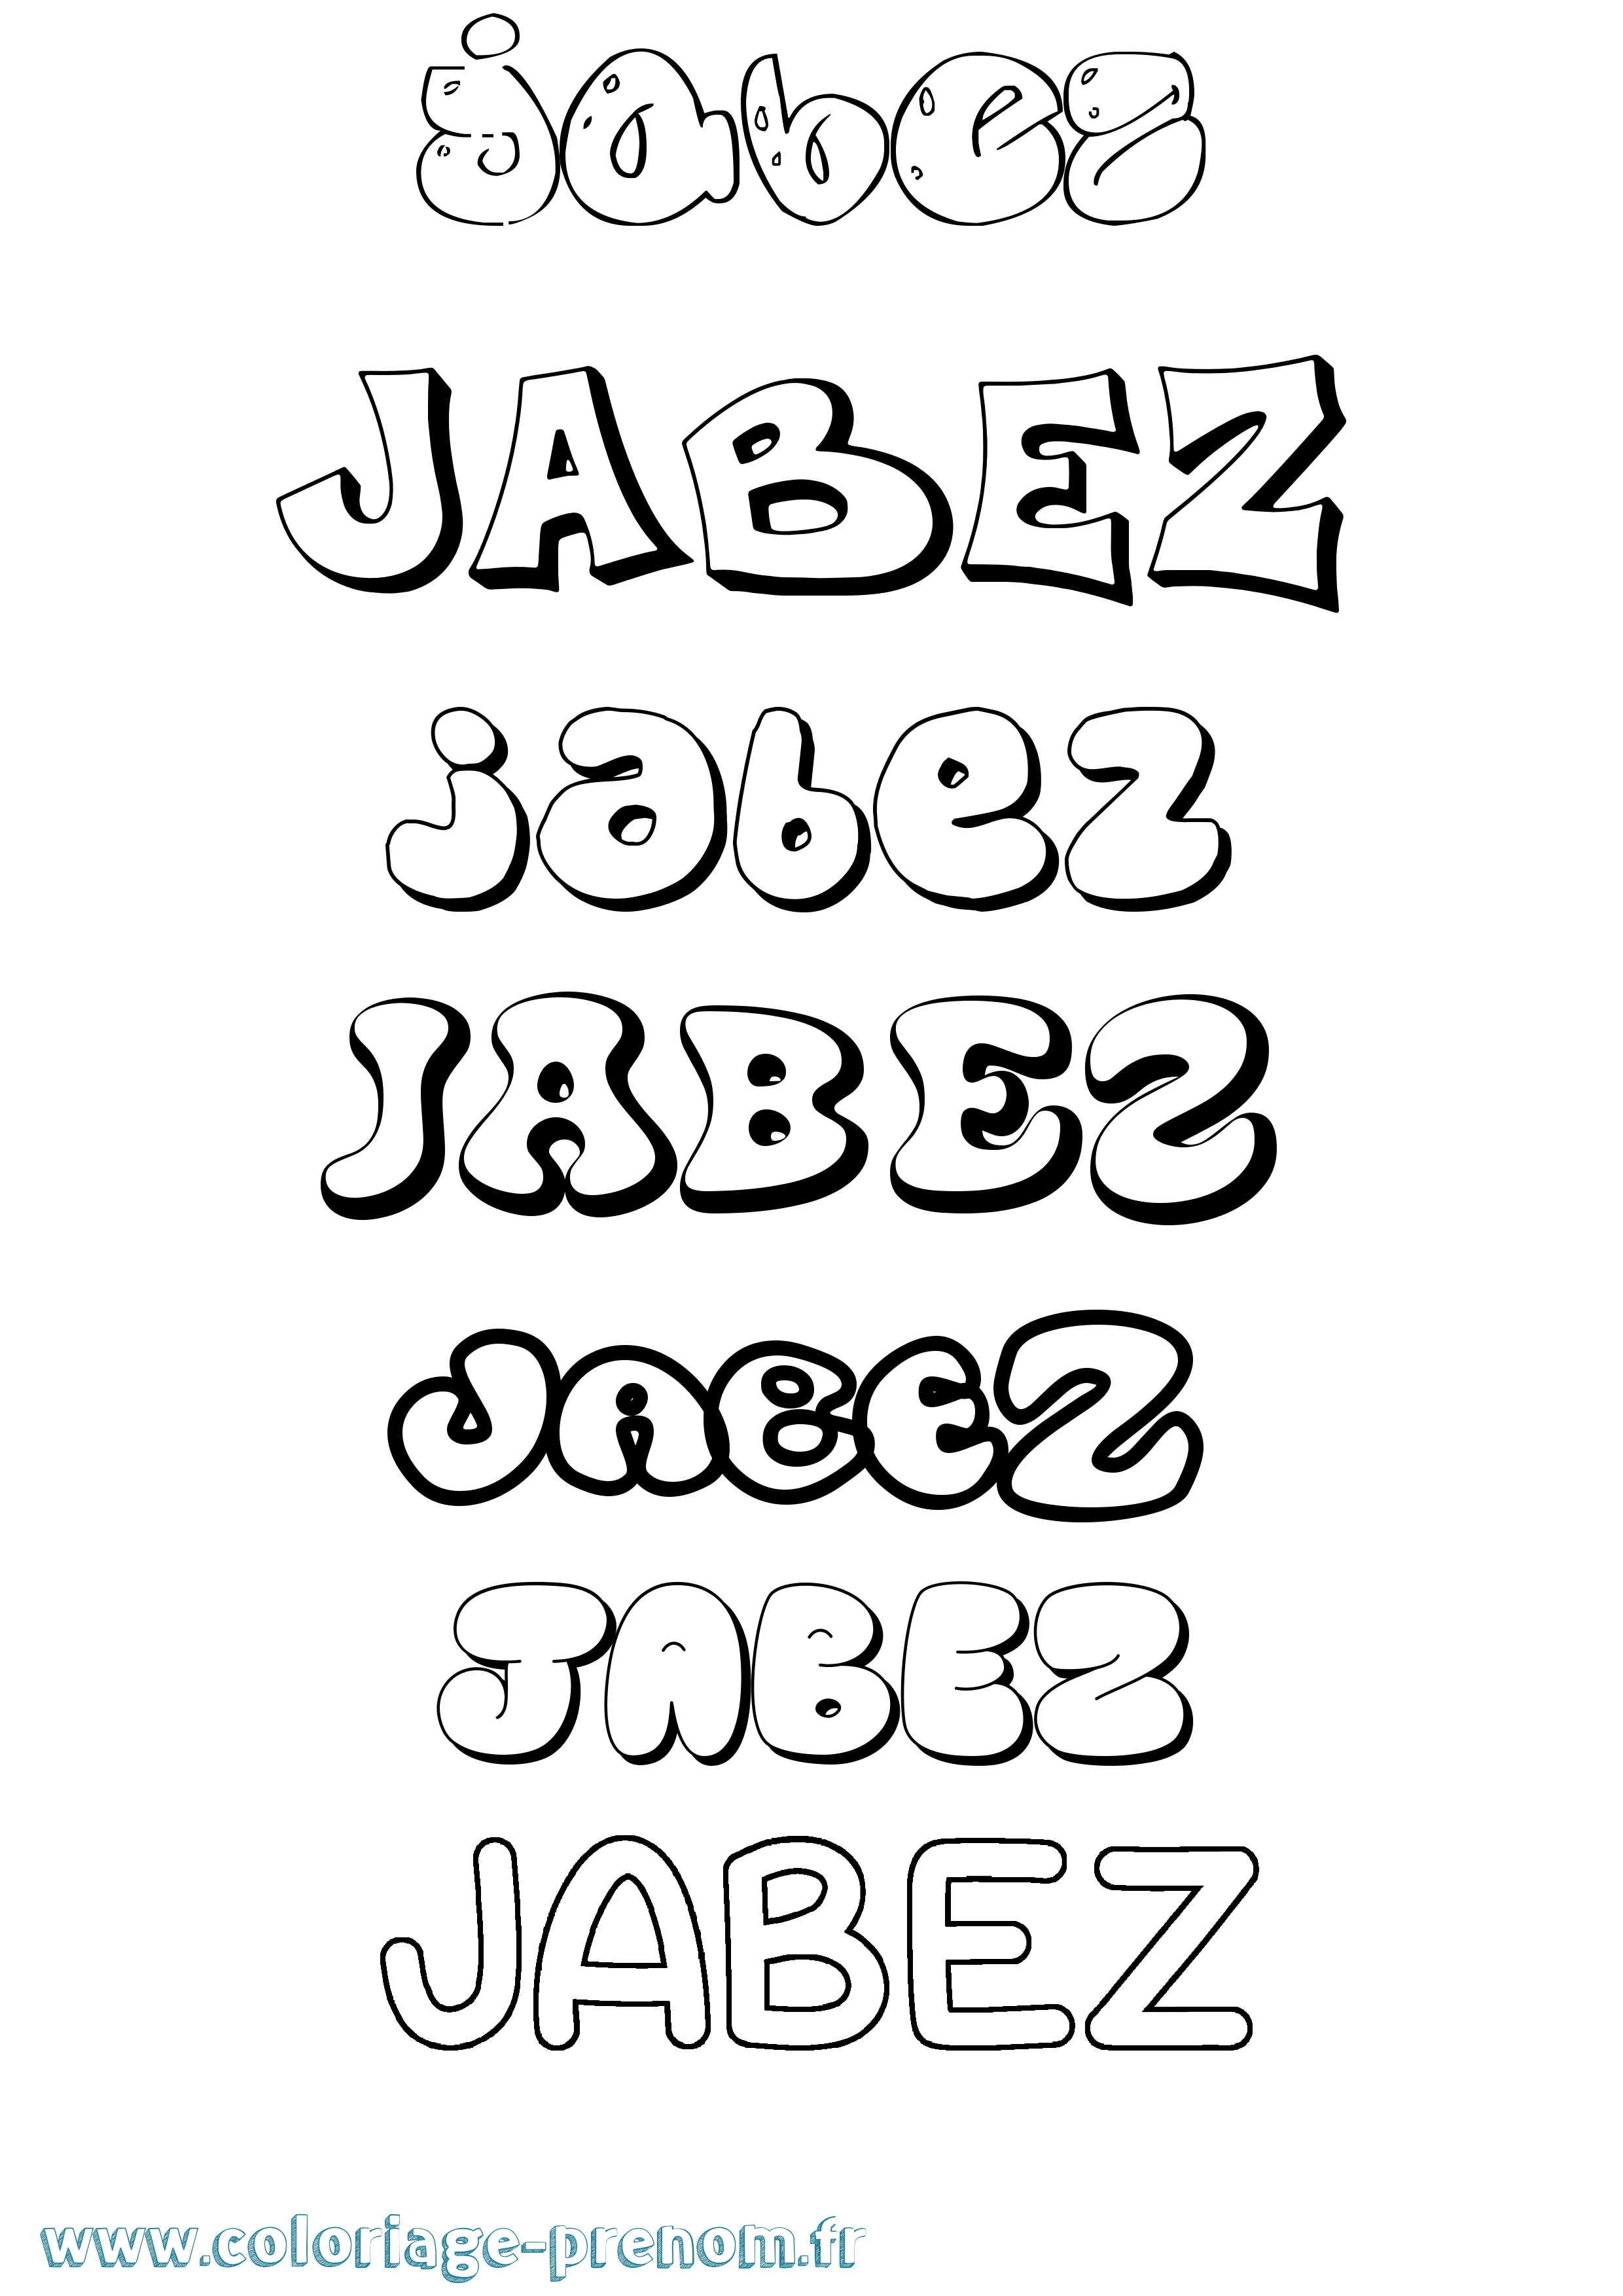 Coloriage prénom Jabez Bubble